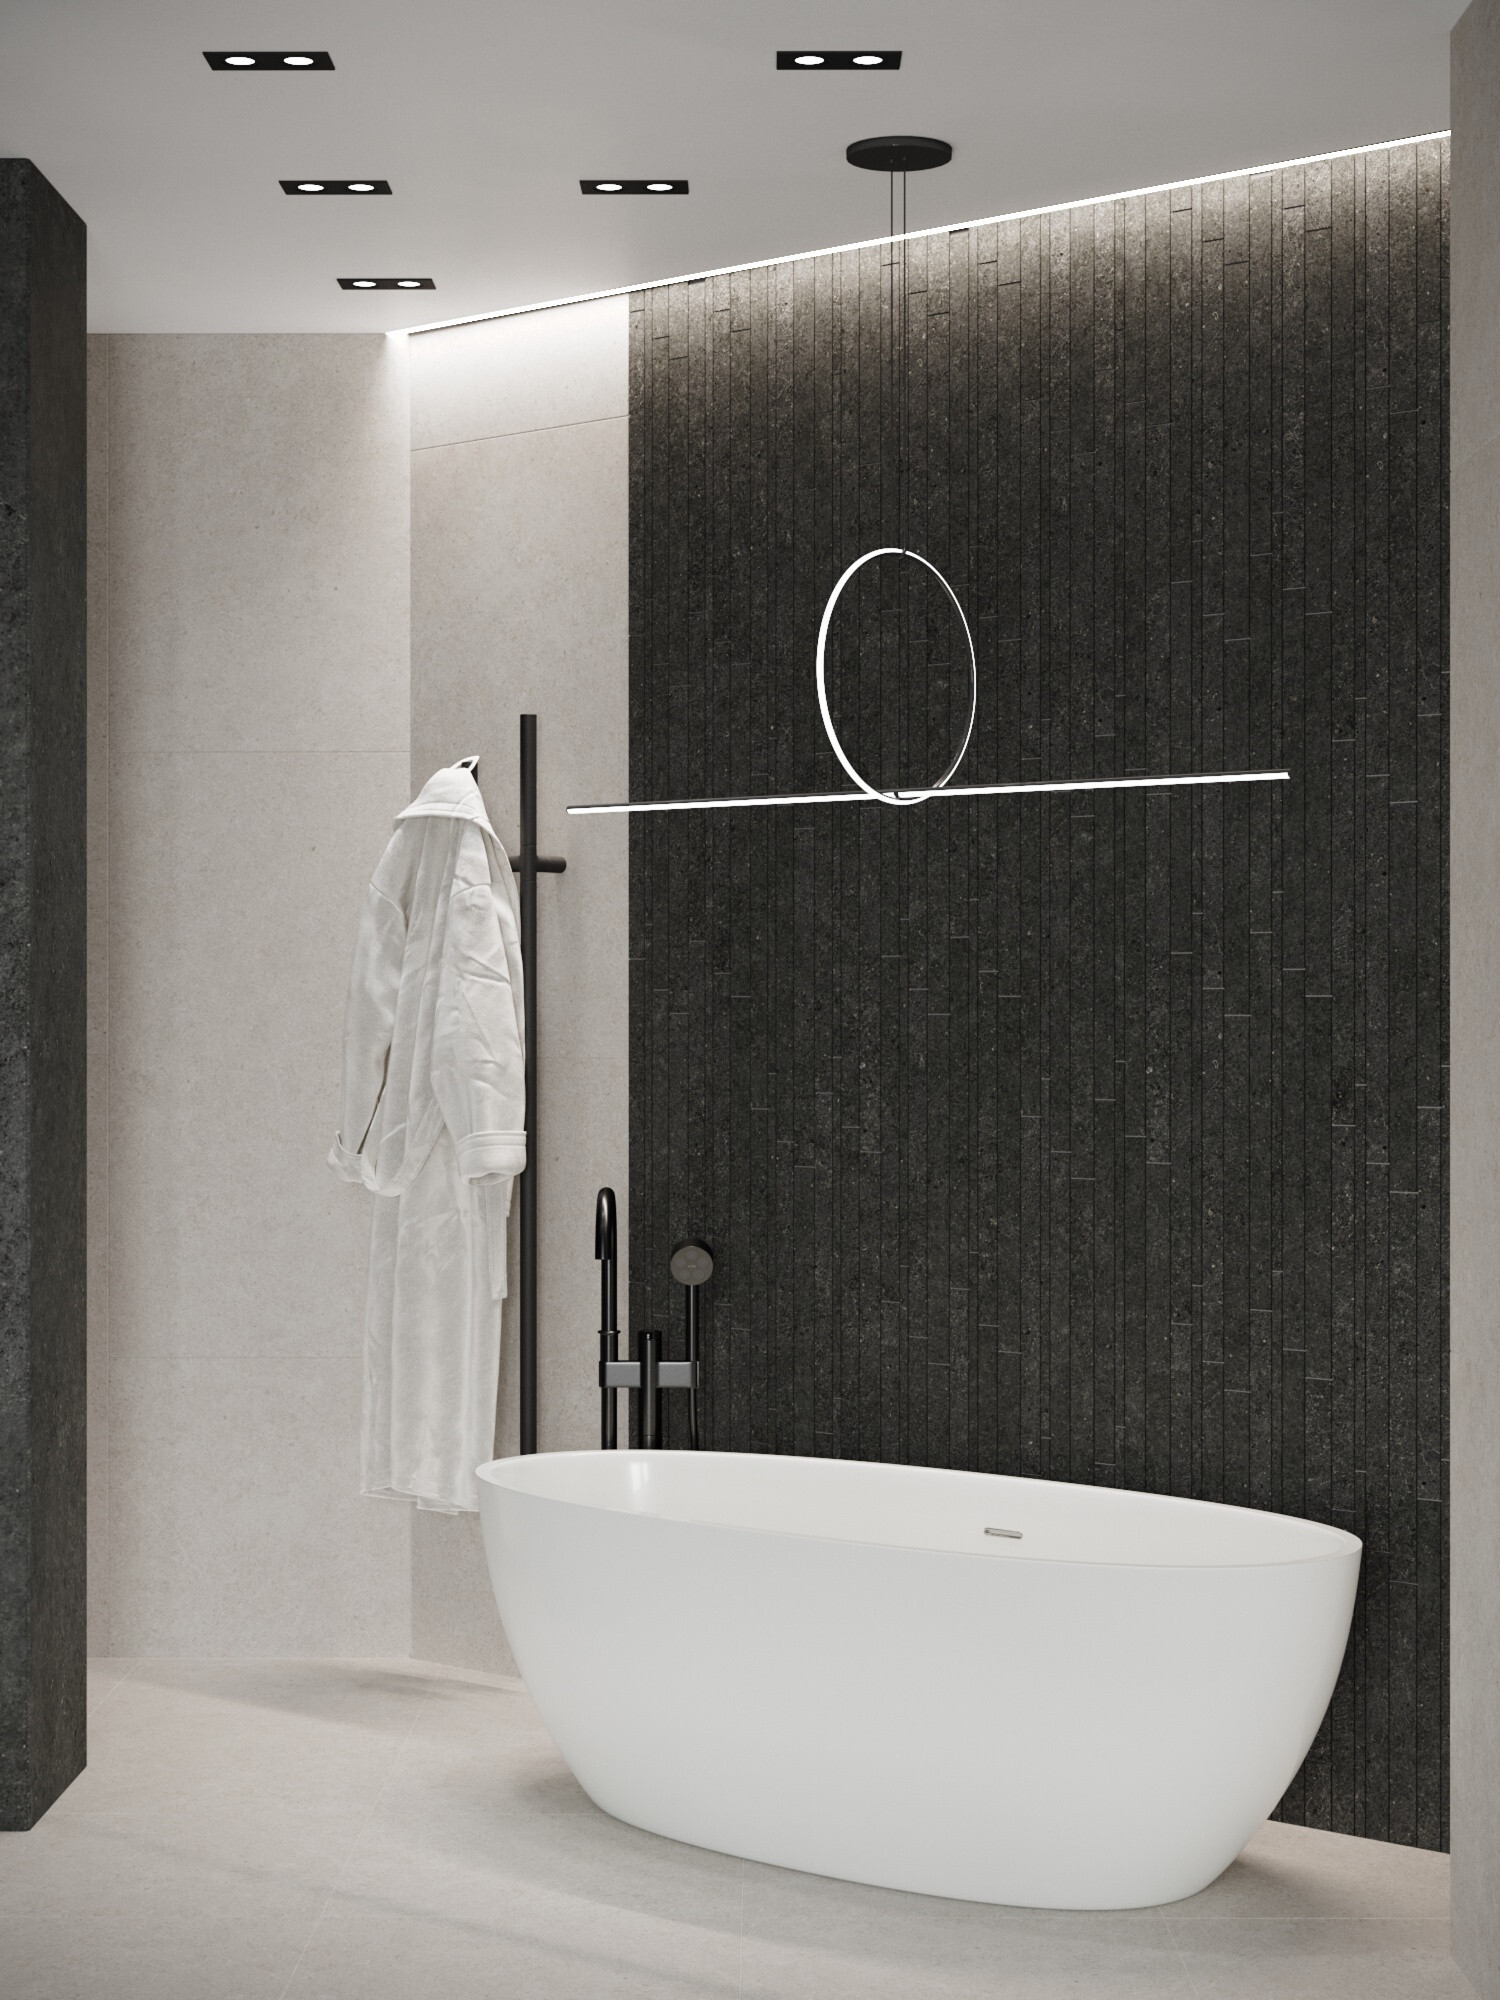 Интерьер ванной с подсветкой настенной и подсветкой светодиодной в современном стиле